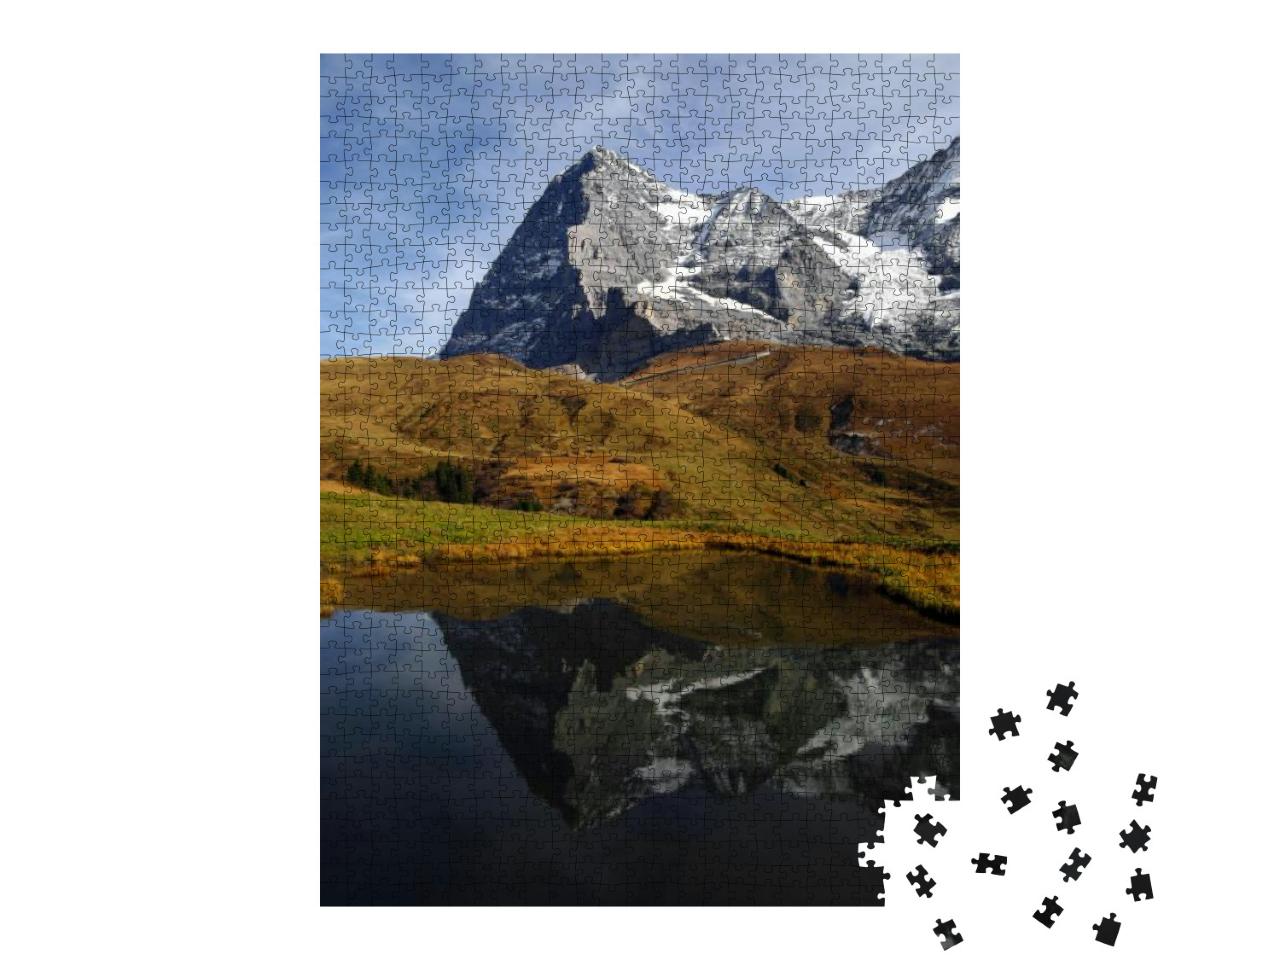 Puzzle 1000 Teile „Eiger, Mönch und Jungfrau: das Dreigestirn der Berner Alpen“